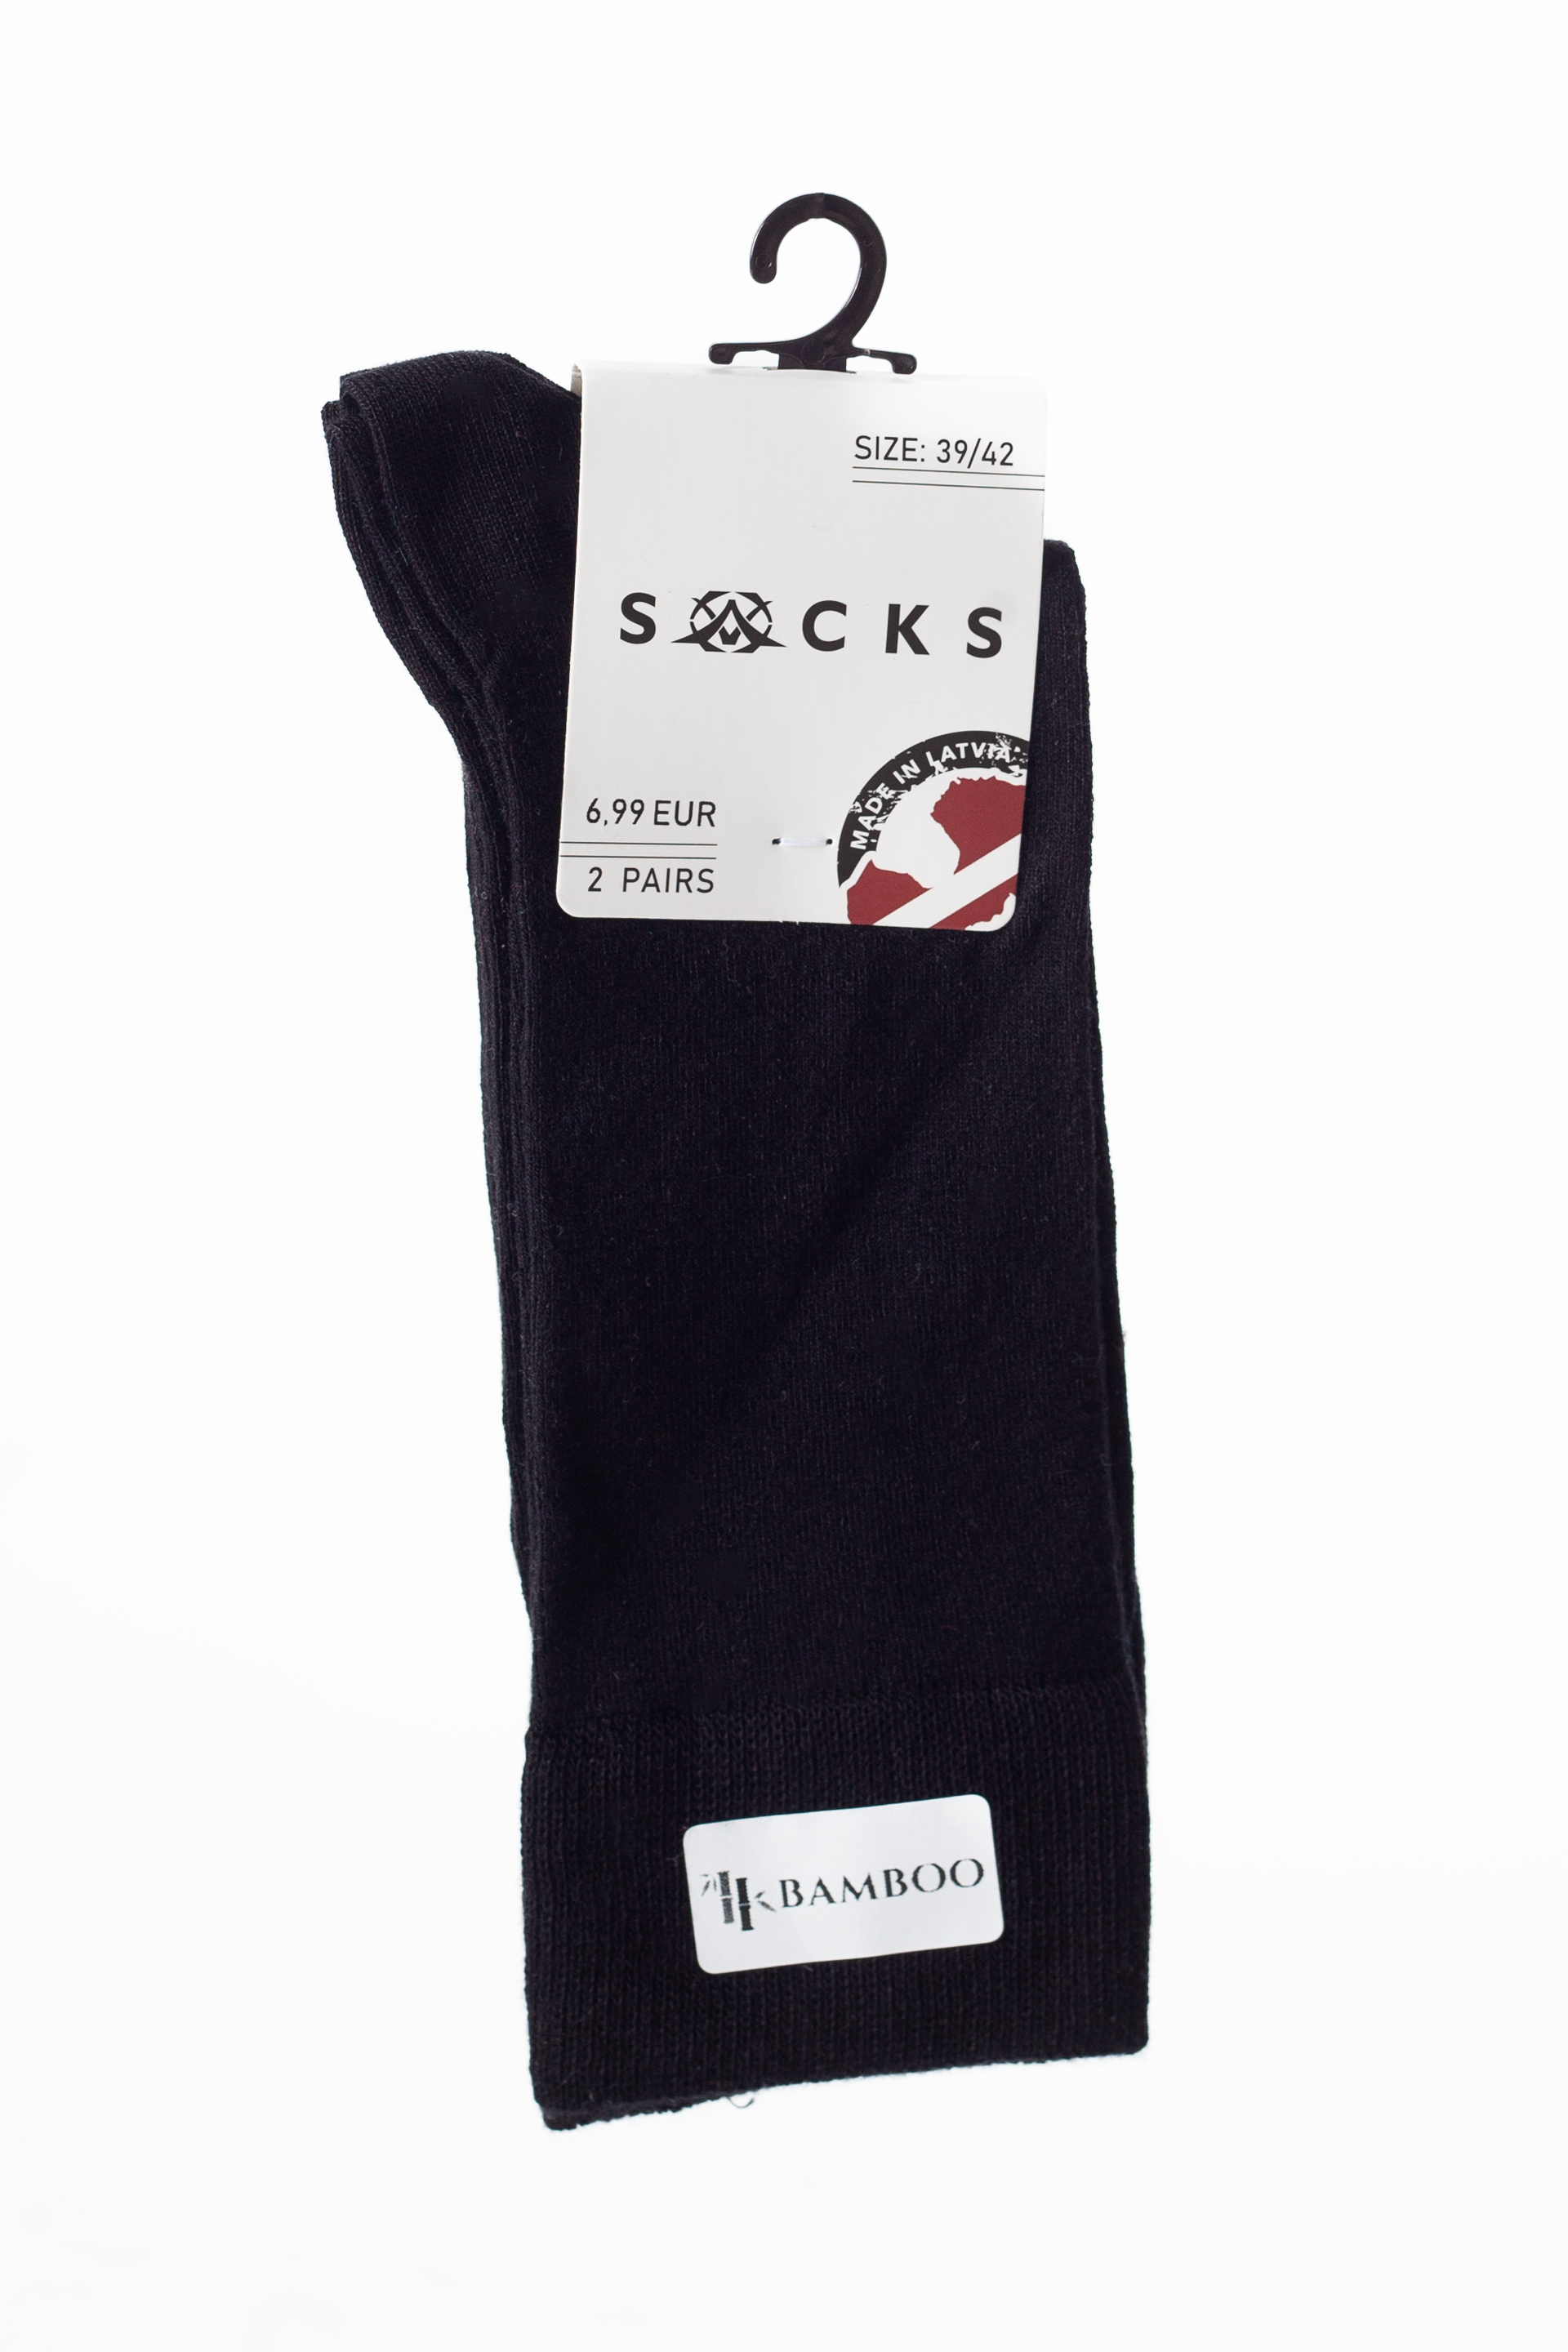 Socks X JEANS 10A15-2P-BLACK